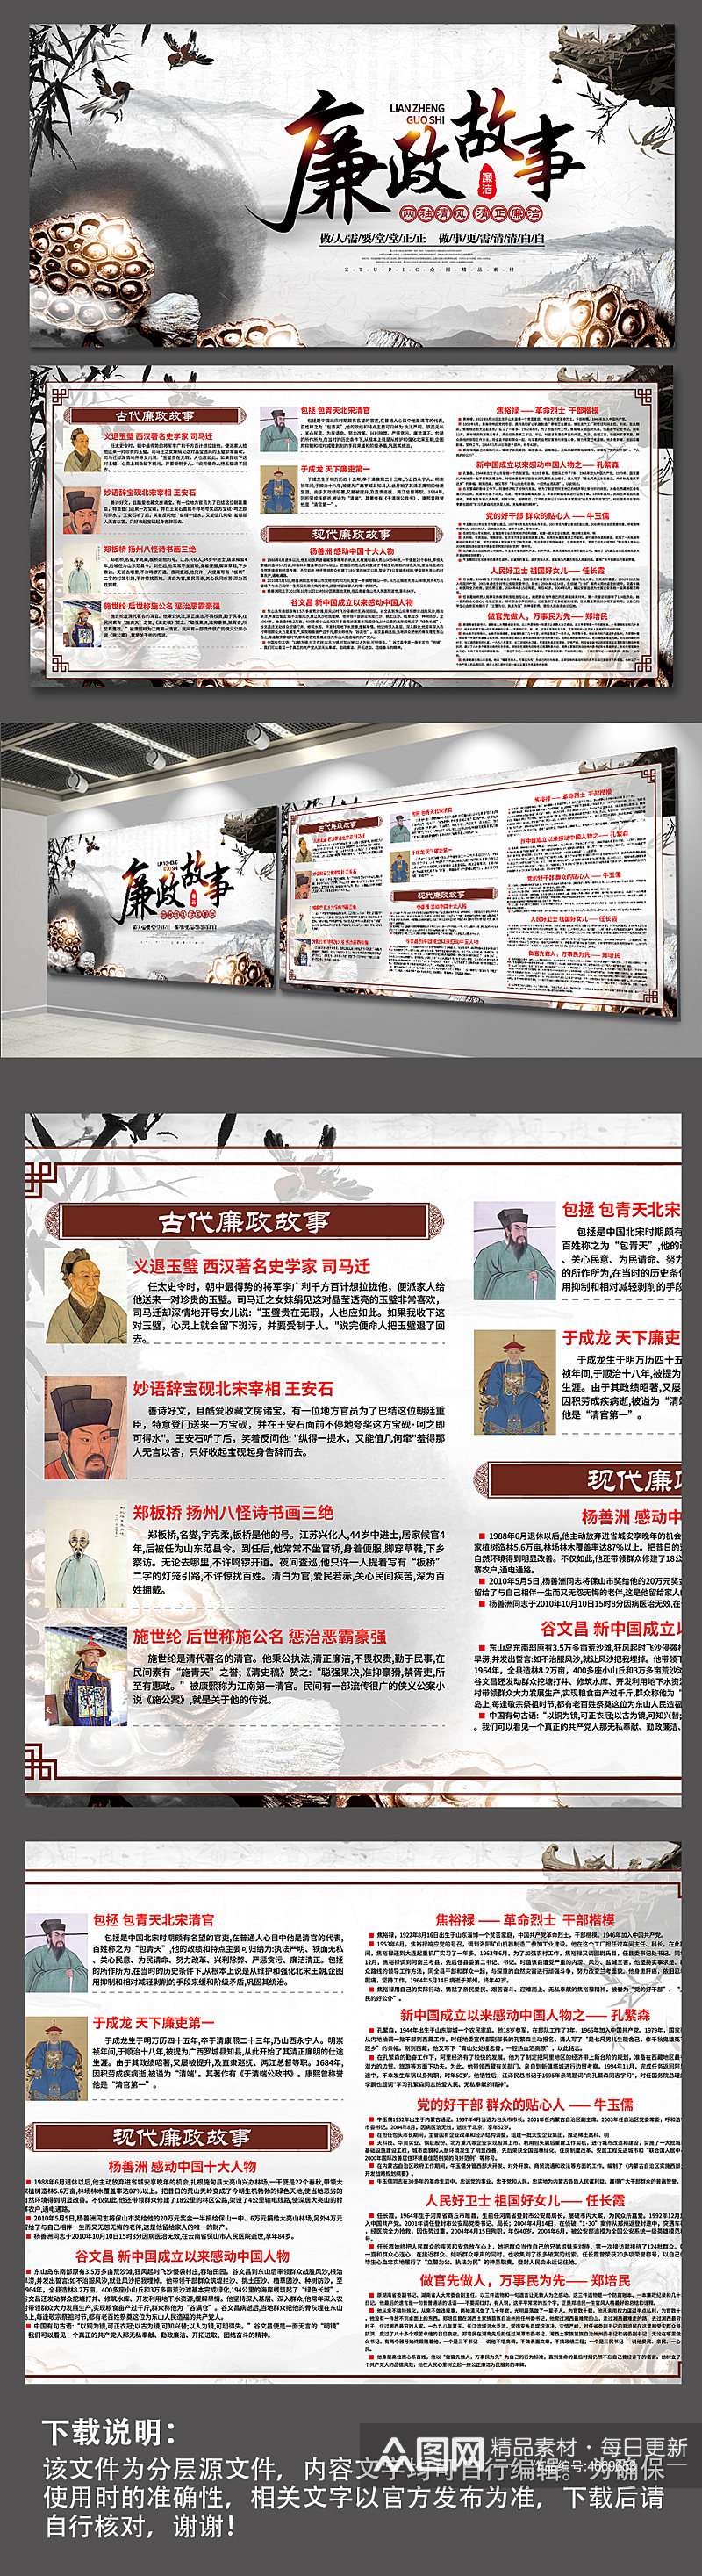 中国风廉政文化典故廉政文化故事展板海报素材